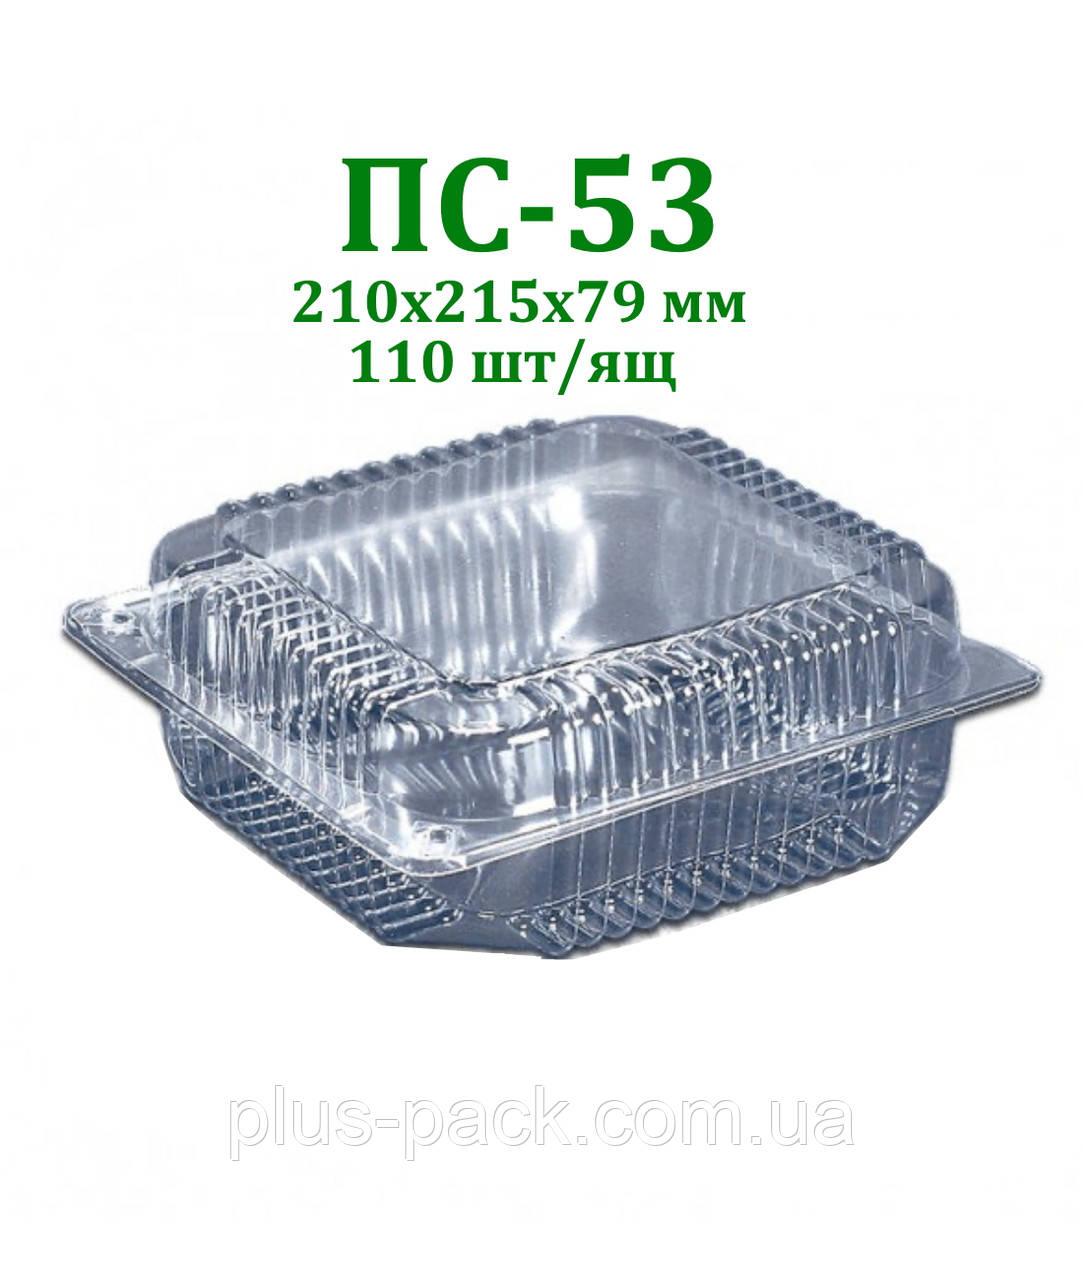 Блістерна одноразова упаковка для кондитерських виробів ПС-53 (2250 мл) 110шт/ящ